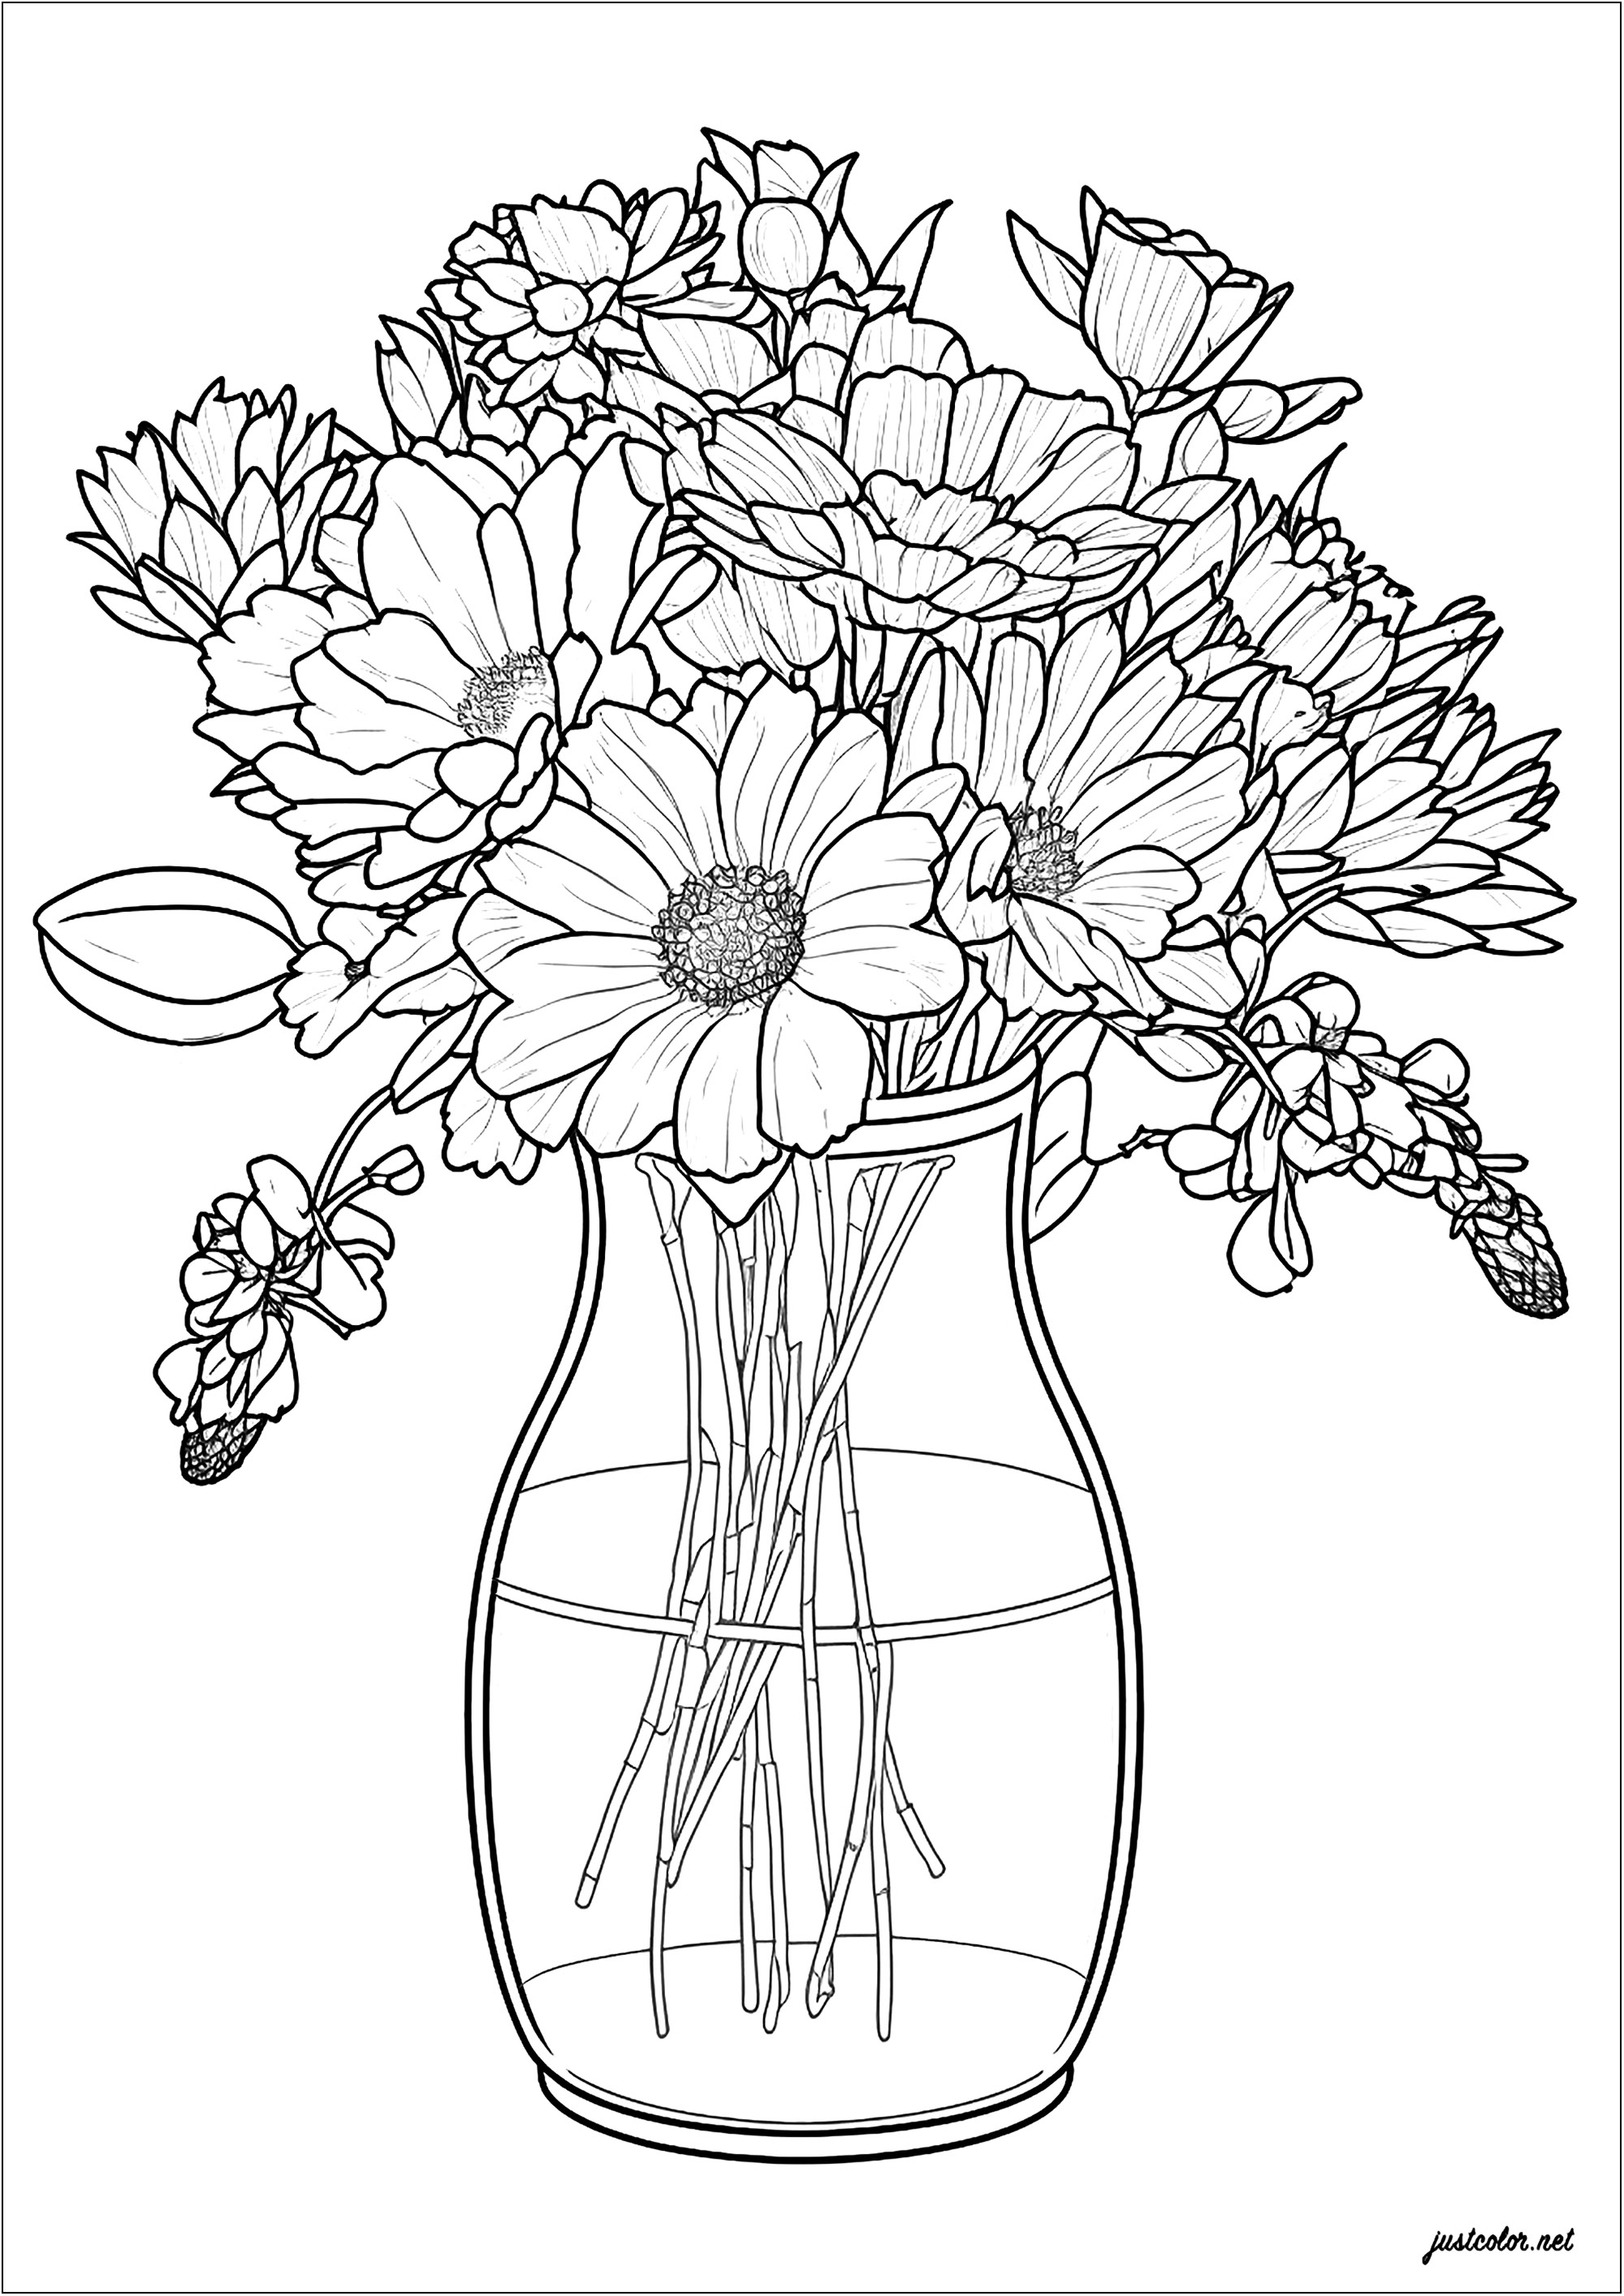 Vaso e fiori delicati. Un bellissimo disegno dalle linee sottili, che rappresenta bellissimi fiori elegantemente distribuiti in un vaso di vetro. Un ottimo modo per divertirsi a creare qualcosa di unico e bello.